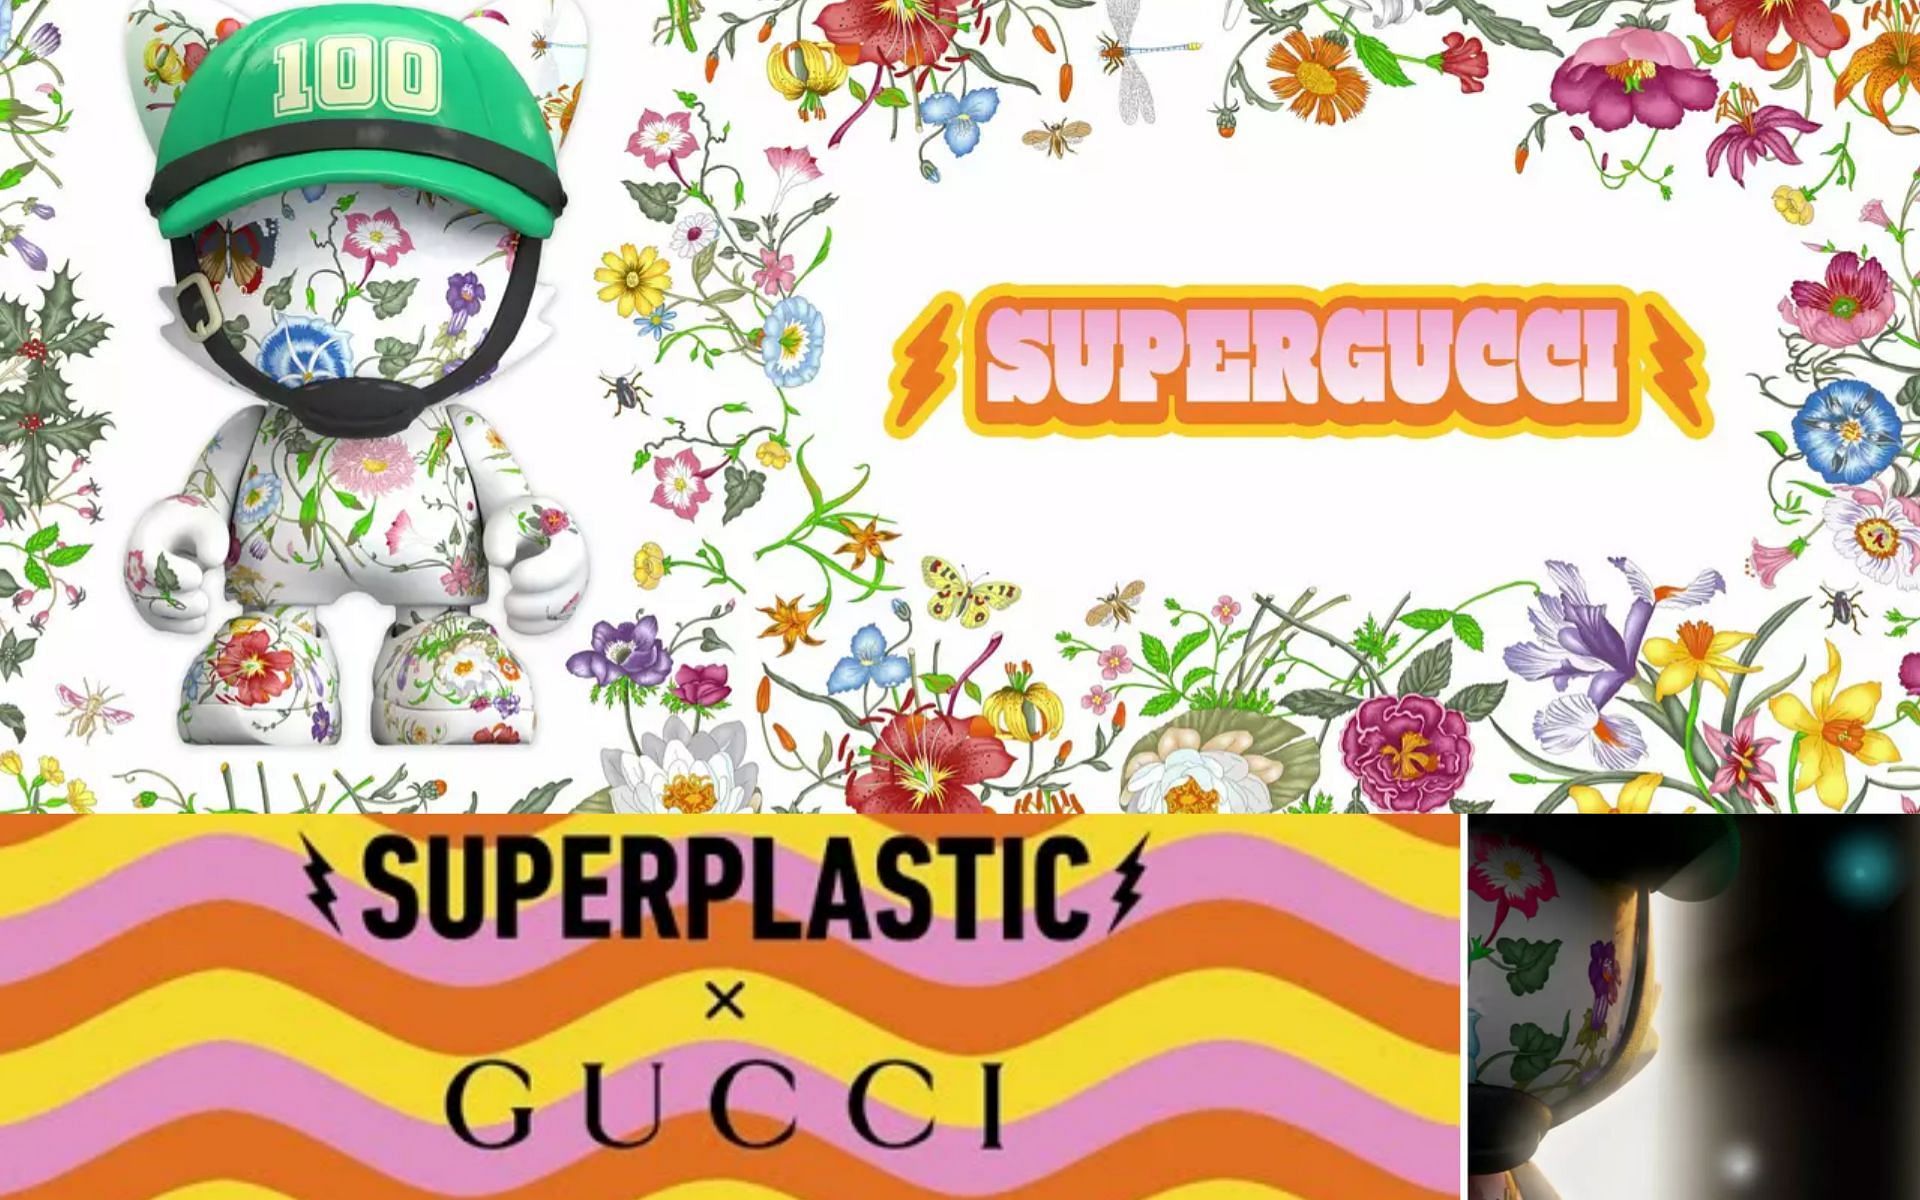 SUPERGUCCI NFT drop via Superplastic and Gucci (image via superplastic.co /superplastic/youtube)